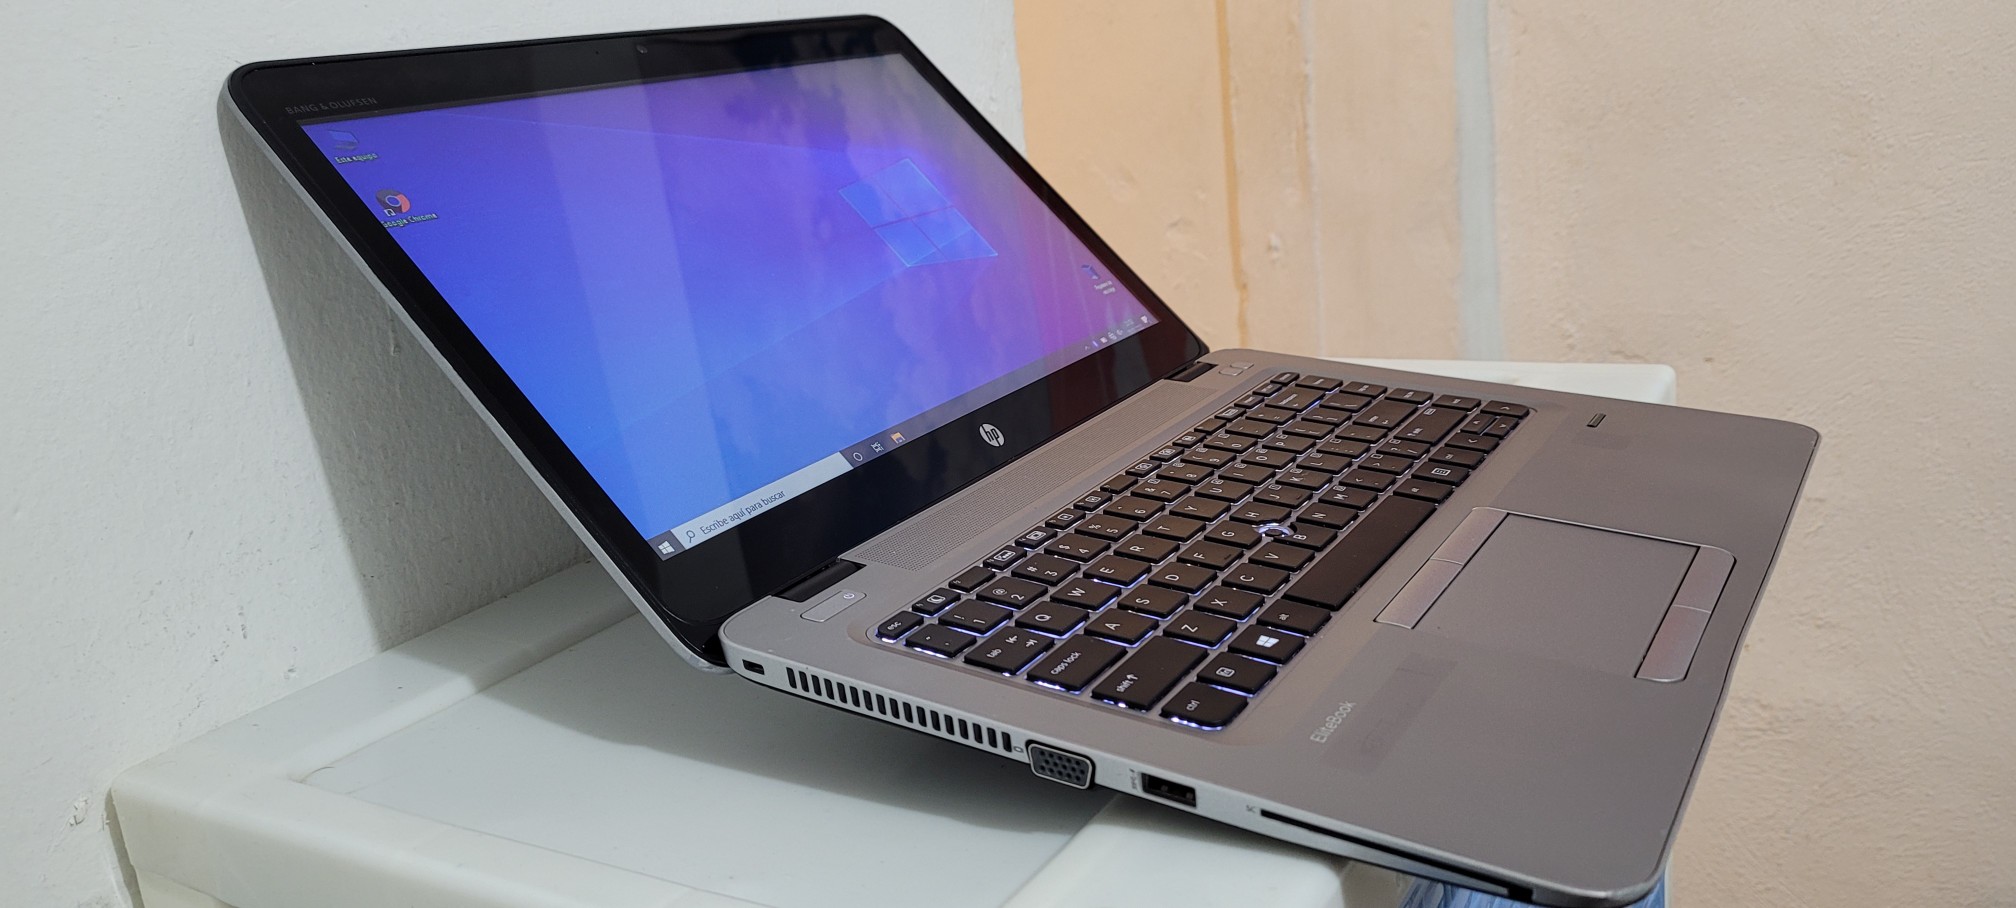 computadoras y laptops - laptop hp Touch 14 Pulg Core i5 7ma Gen Ram 8gb ddr4 Disco 500gb hdmi Full 1